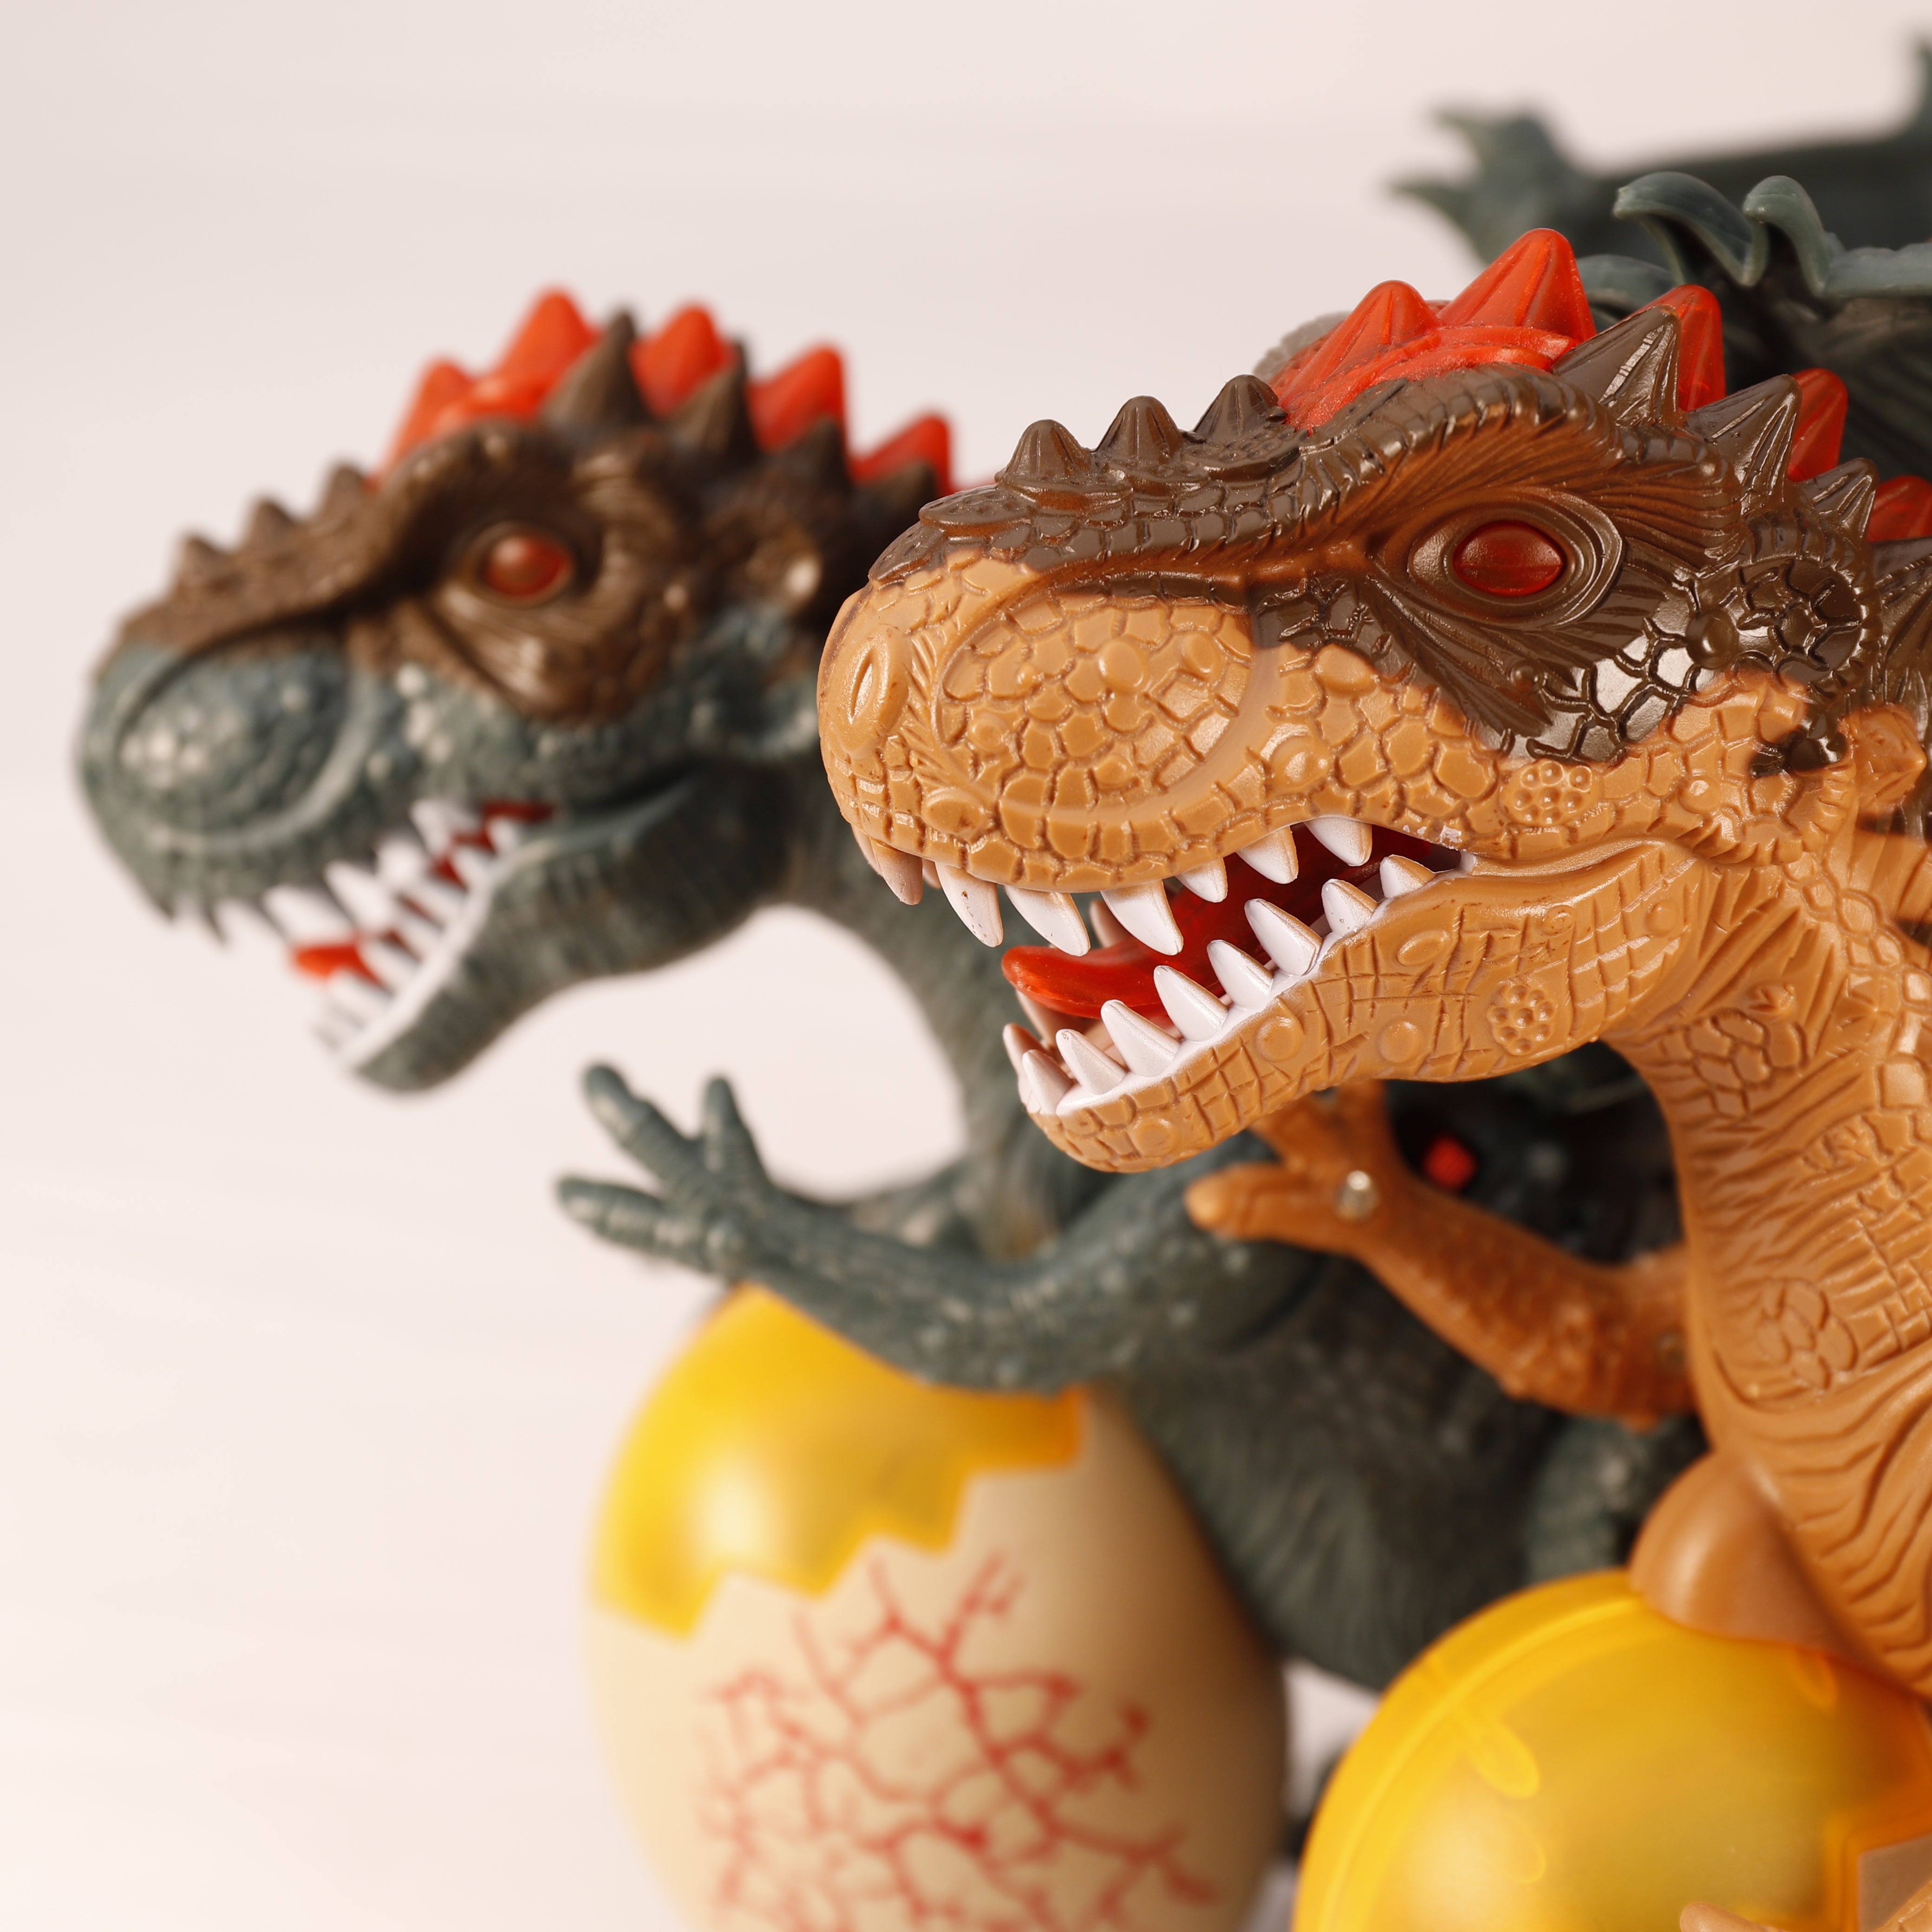 Elektrische Kinder Dinosaurier T-Rex Figur Spielzeug mit Licht Sound Geschenk